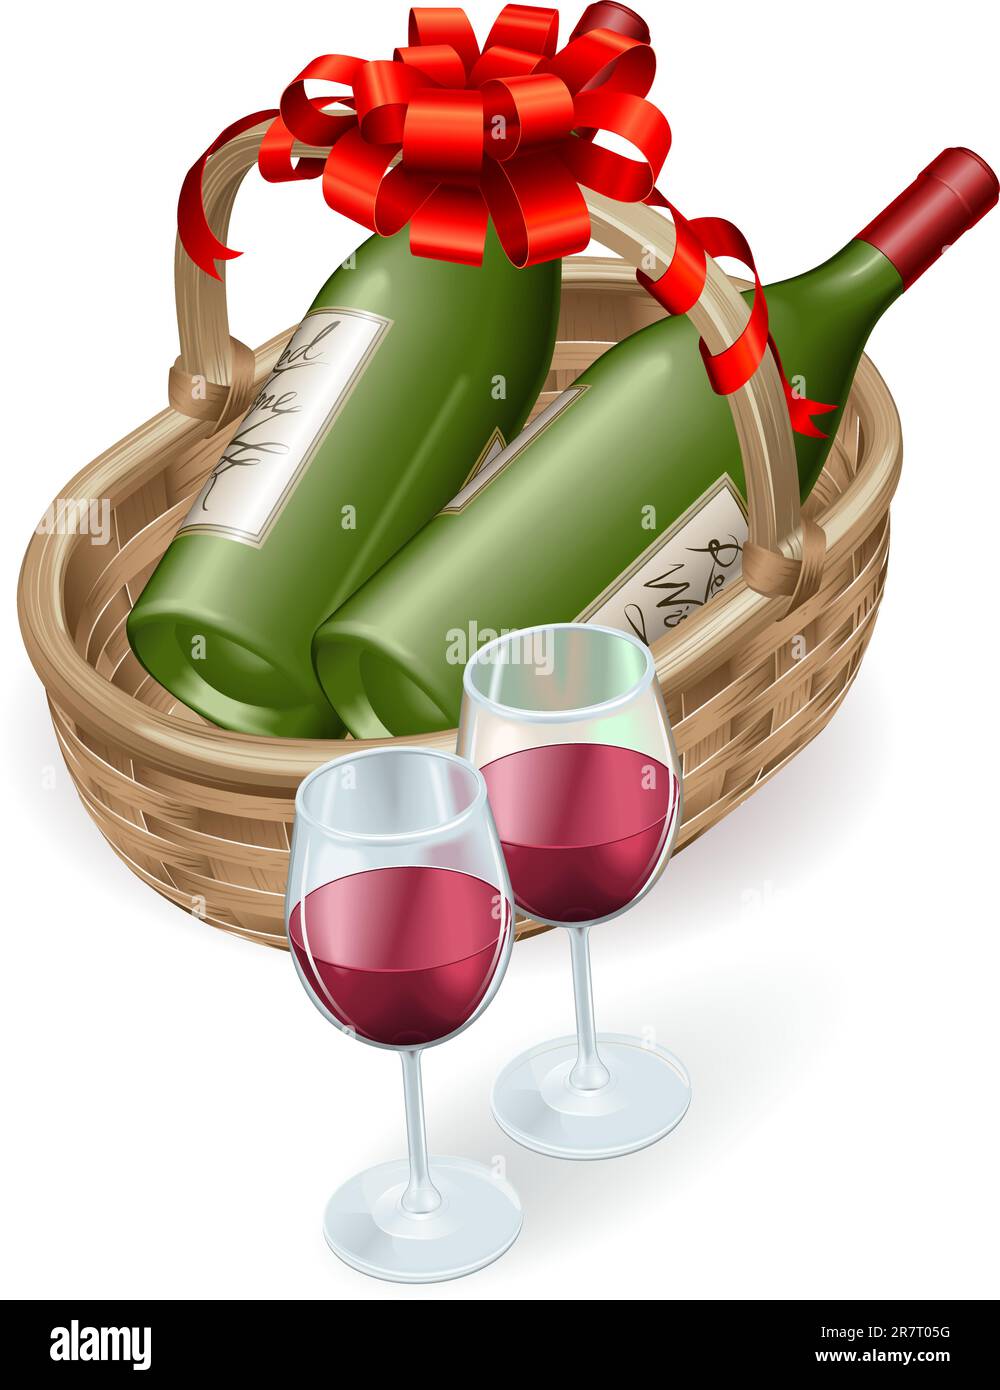 Illustration von Wein von Weidenkorb mit Flasche Rotwein und Gläsern und Dekoration Band und Schleife. Stock Vektor